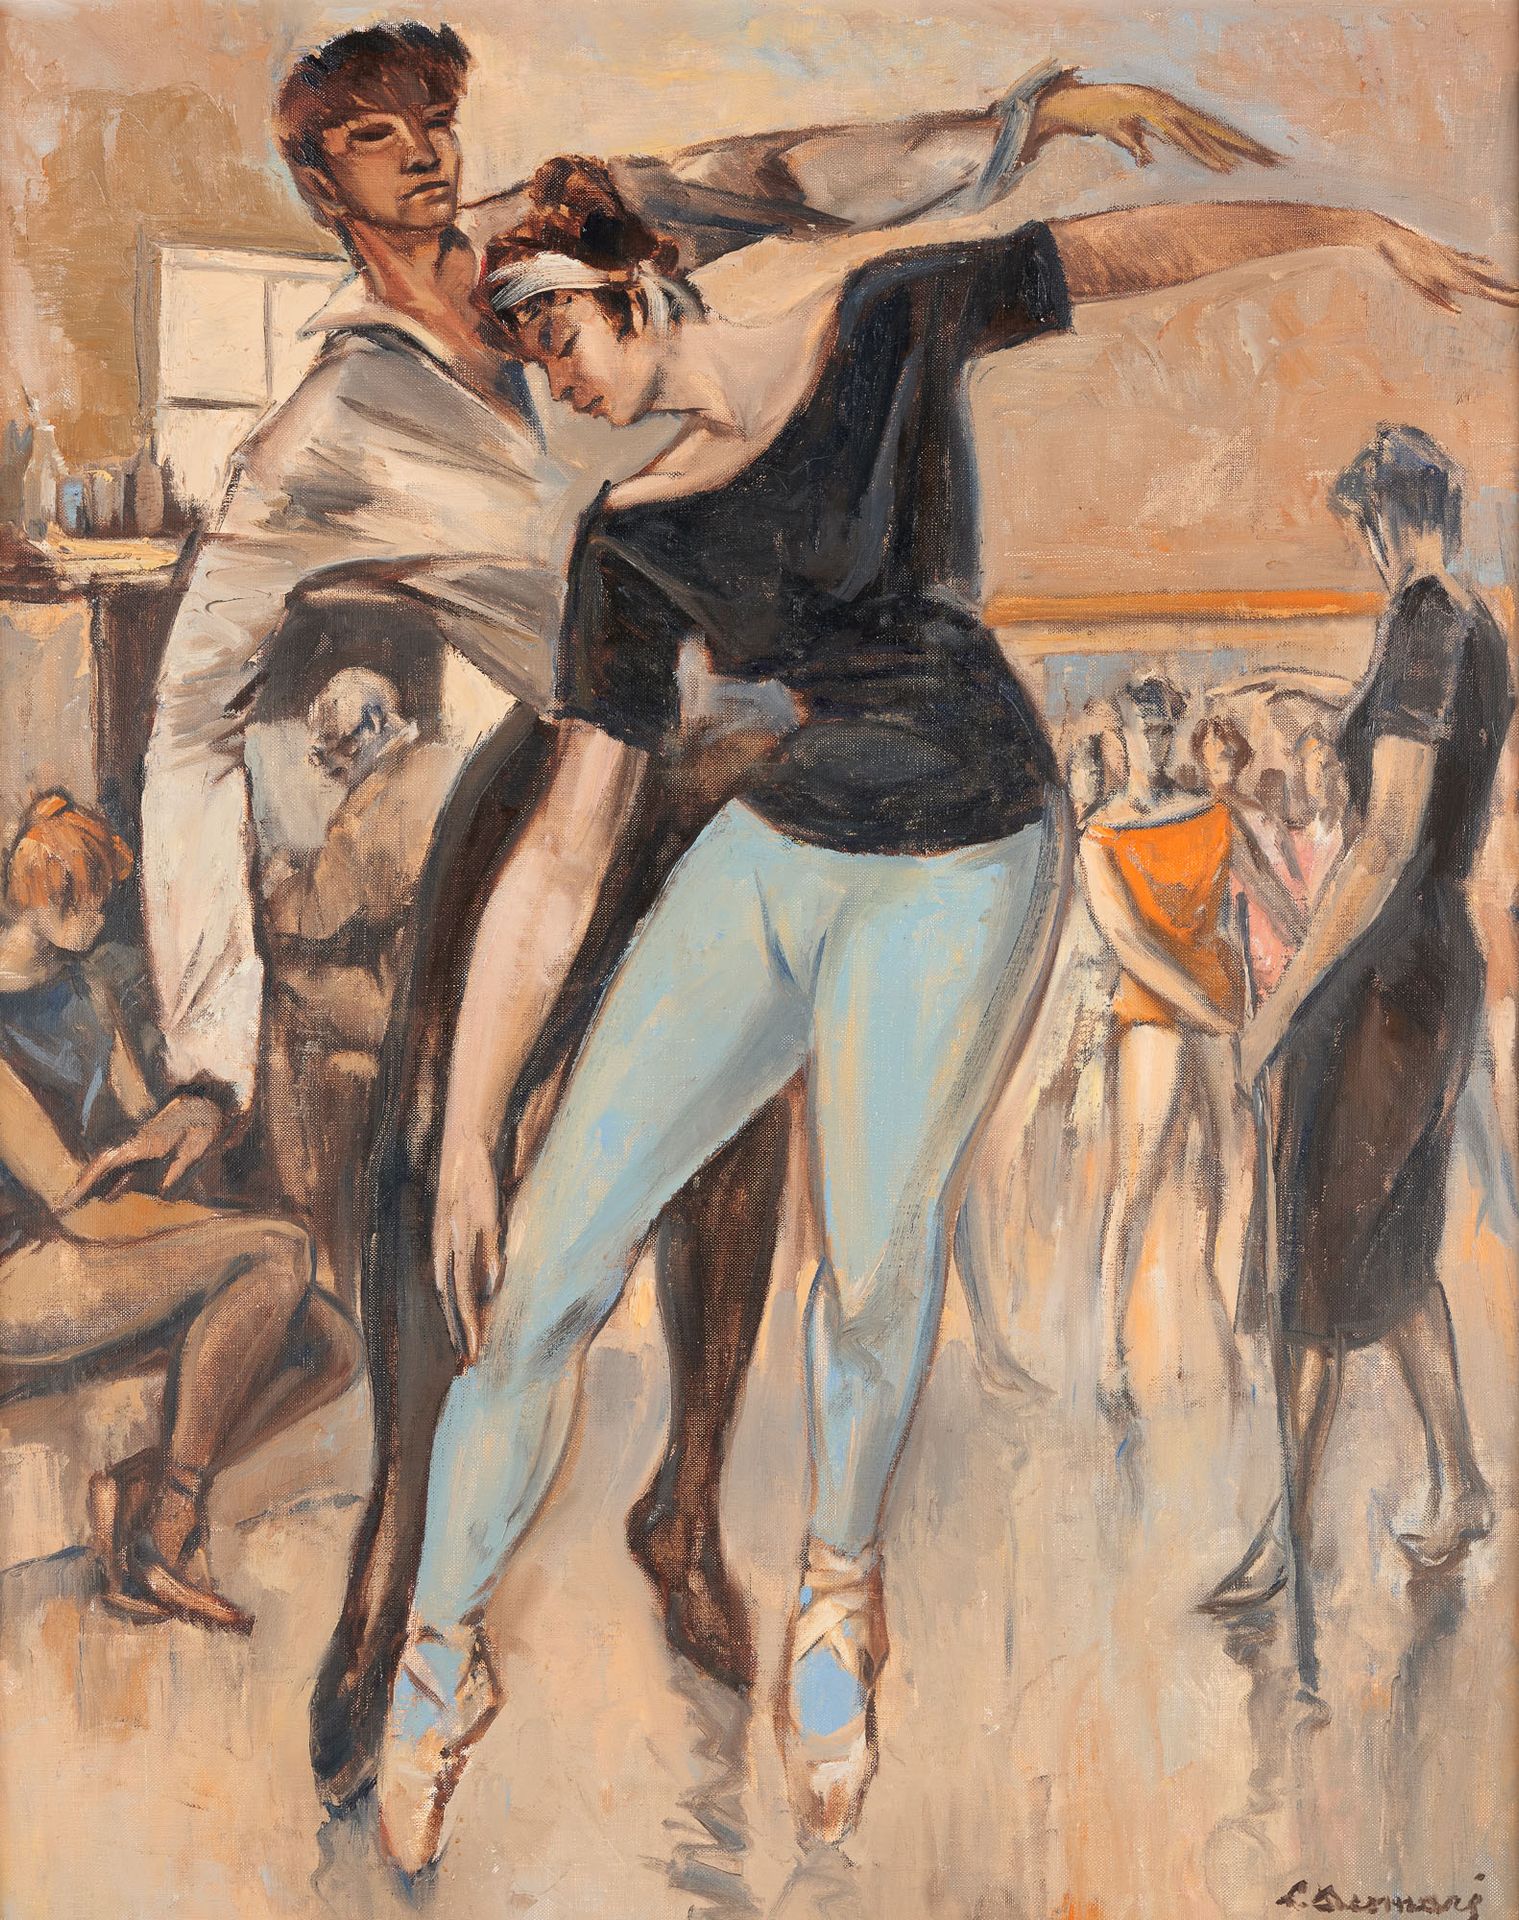 Lucien DESMARÉ École belge (1905-1961) Oil on canvas: The dance class.

Signed: &hellip;